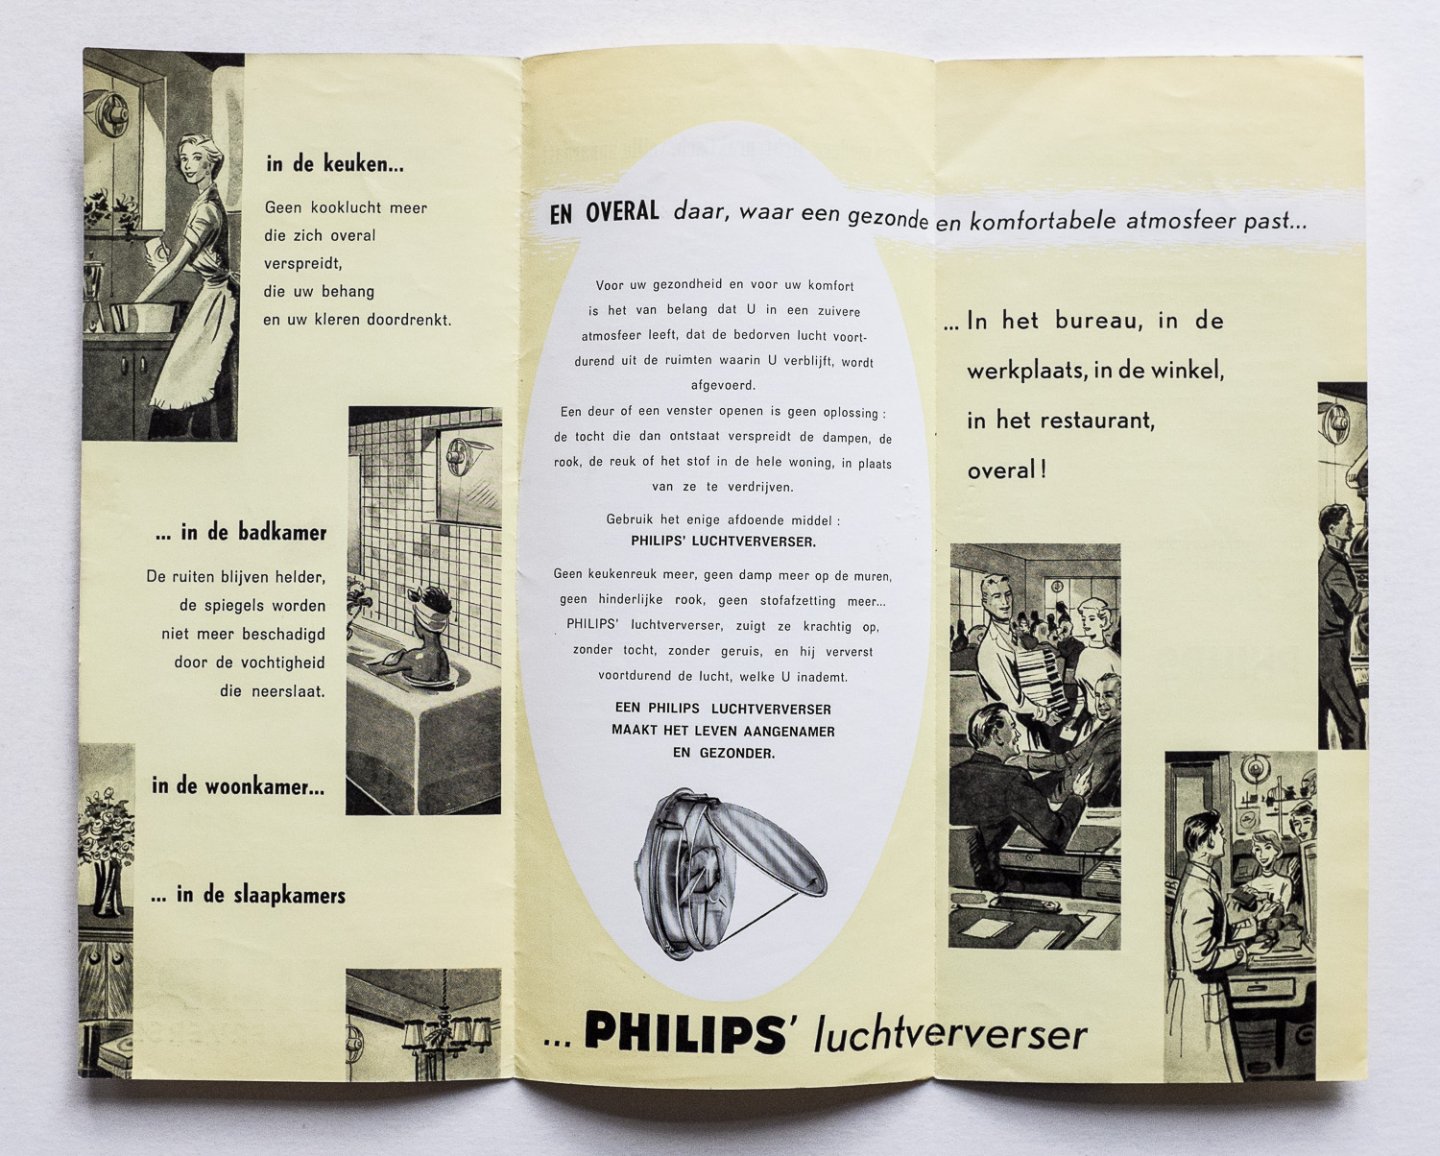 Philips Gloeilampenfabrieken Nederland n.v., Eindhoven - Philips Luchtververser